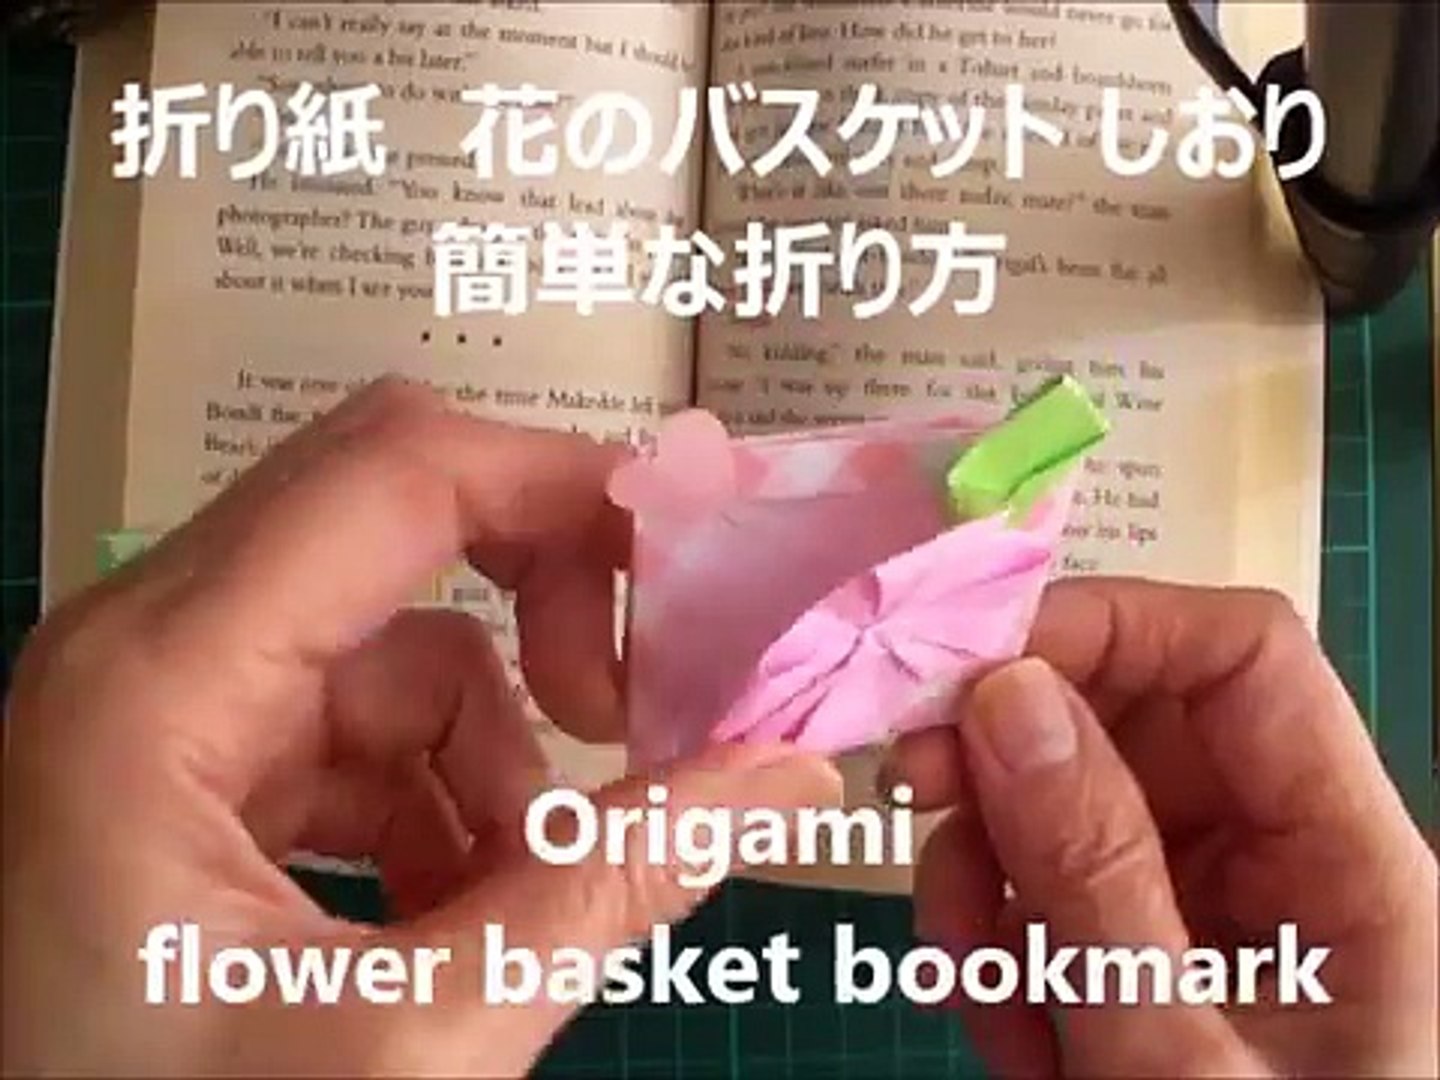 折り紙 花のバスケット しおり 簡単な折り方 Niceno1 Origami Flower In The Basket Bookmark Ouku9qparw4 Video Dailymotion